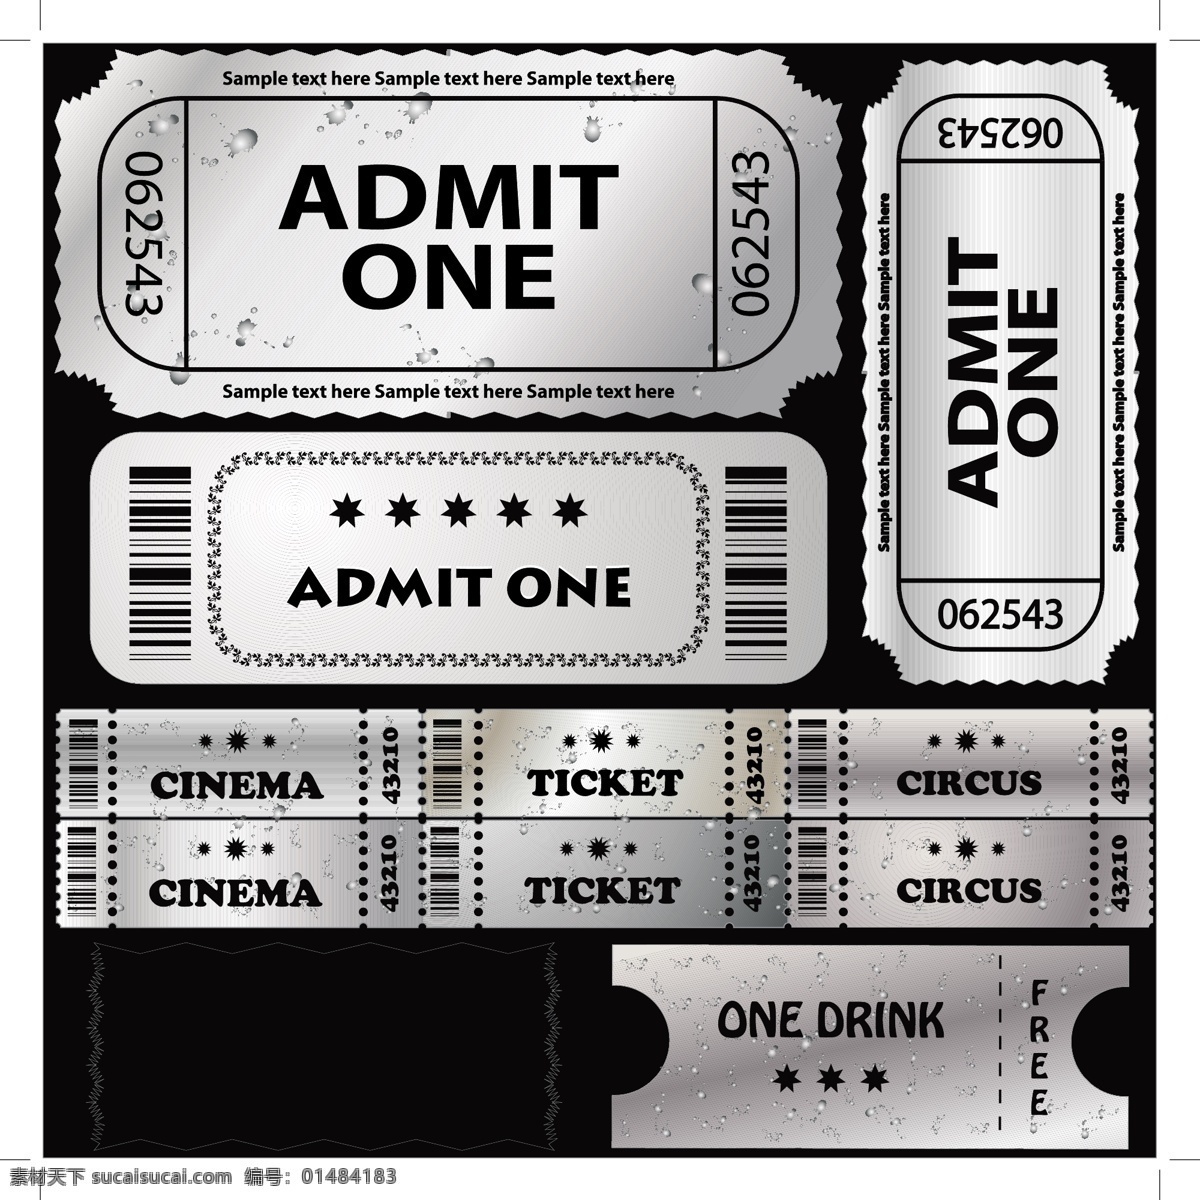 欧洲 美国 电影票 剪辑 艺术 电影 夹子 票 欧洲欧洲 美国电影 票夹子 免费 电影票卡 剪贴 画 向量的电影票 矢量图 其他矢量图